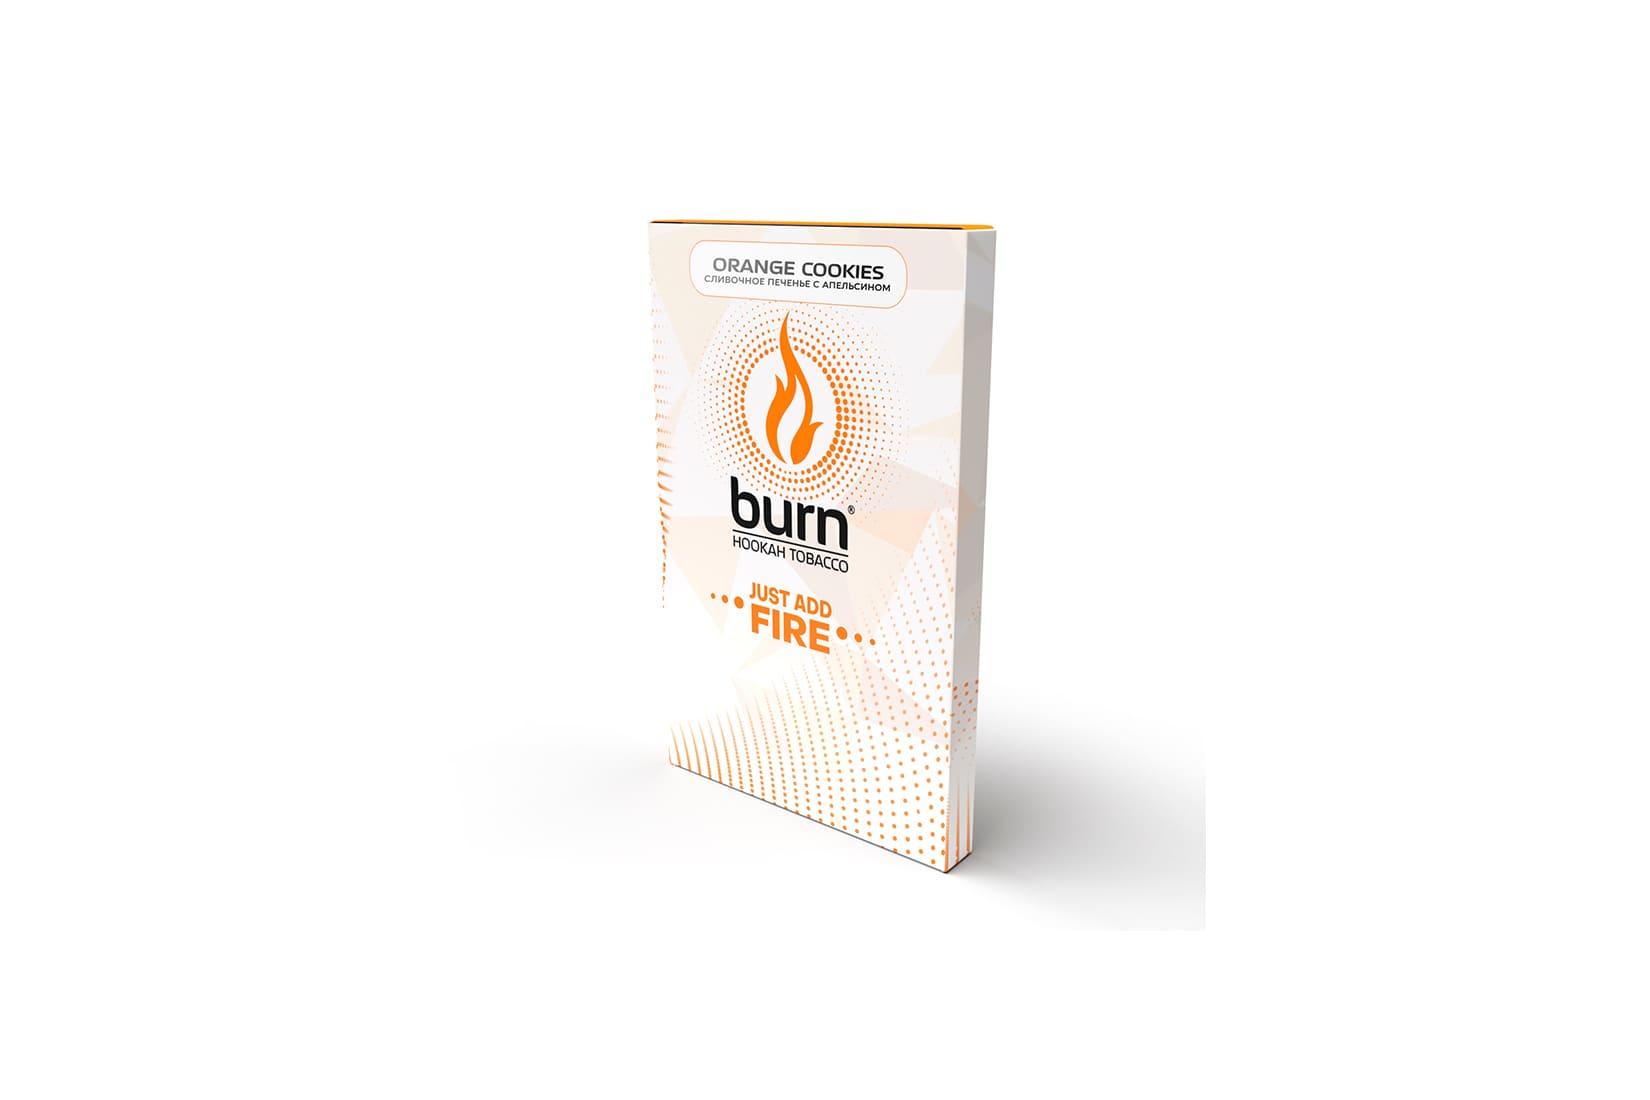 Табак для кальяна Burn Orange Cookies — описание, вкусы, миксы, отзывы